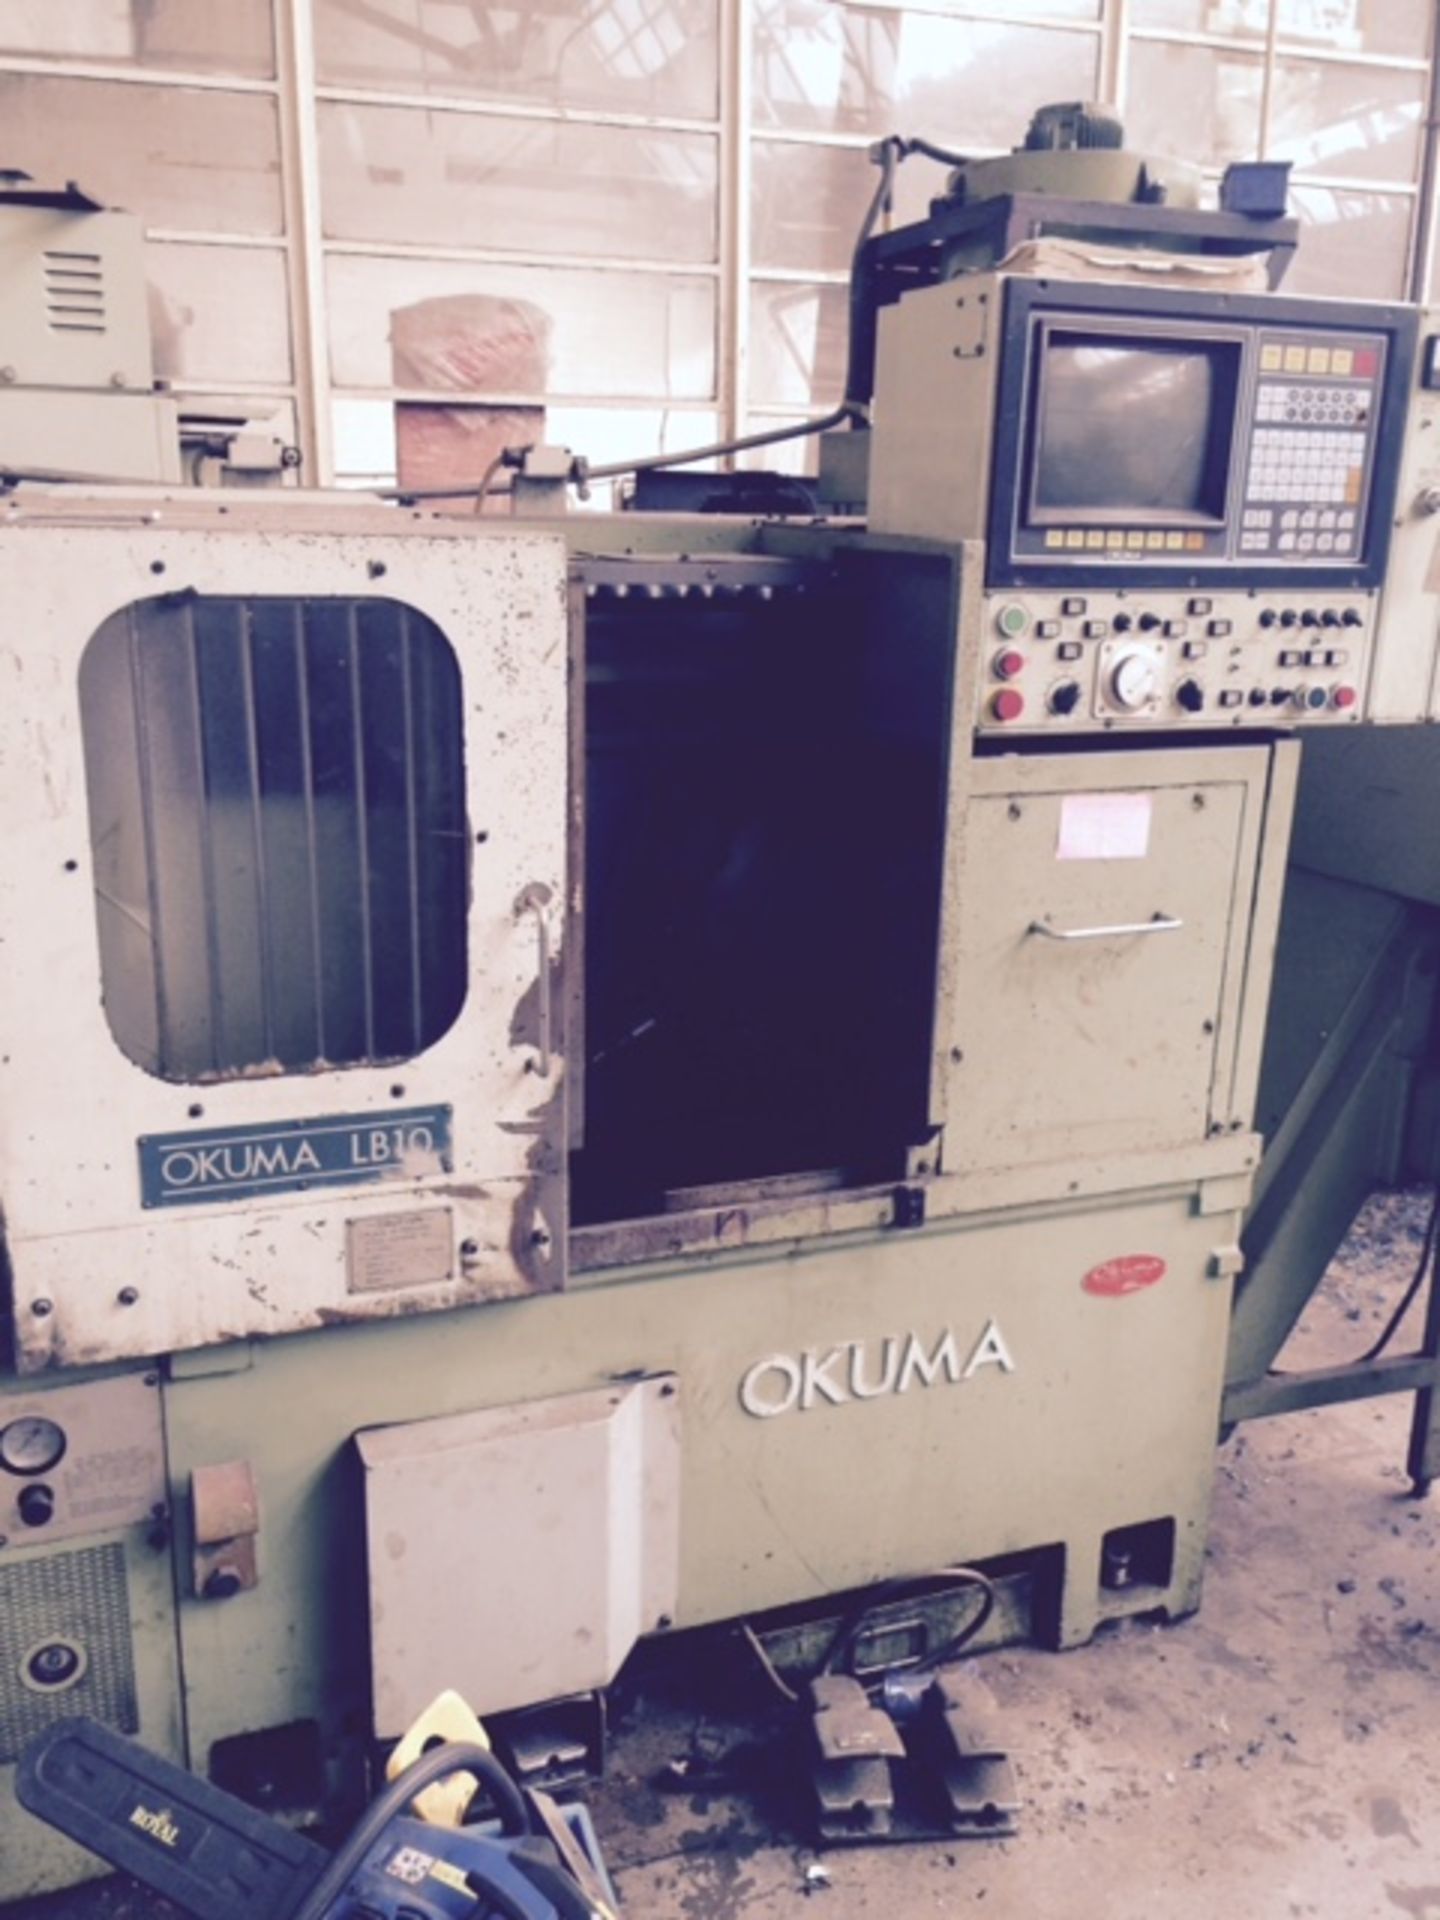 Okuma LB10 CNC lathe - fully working